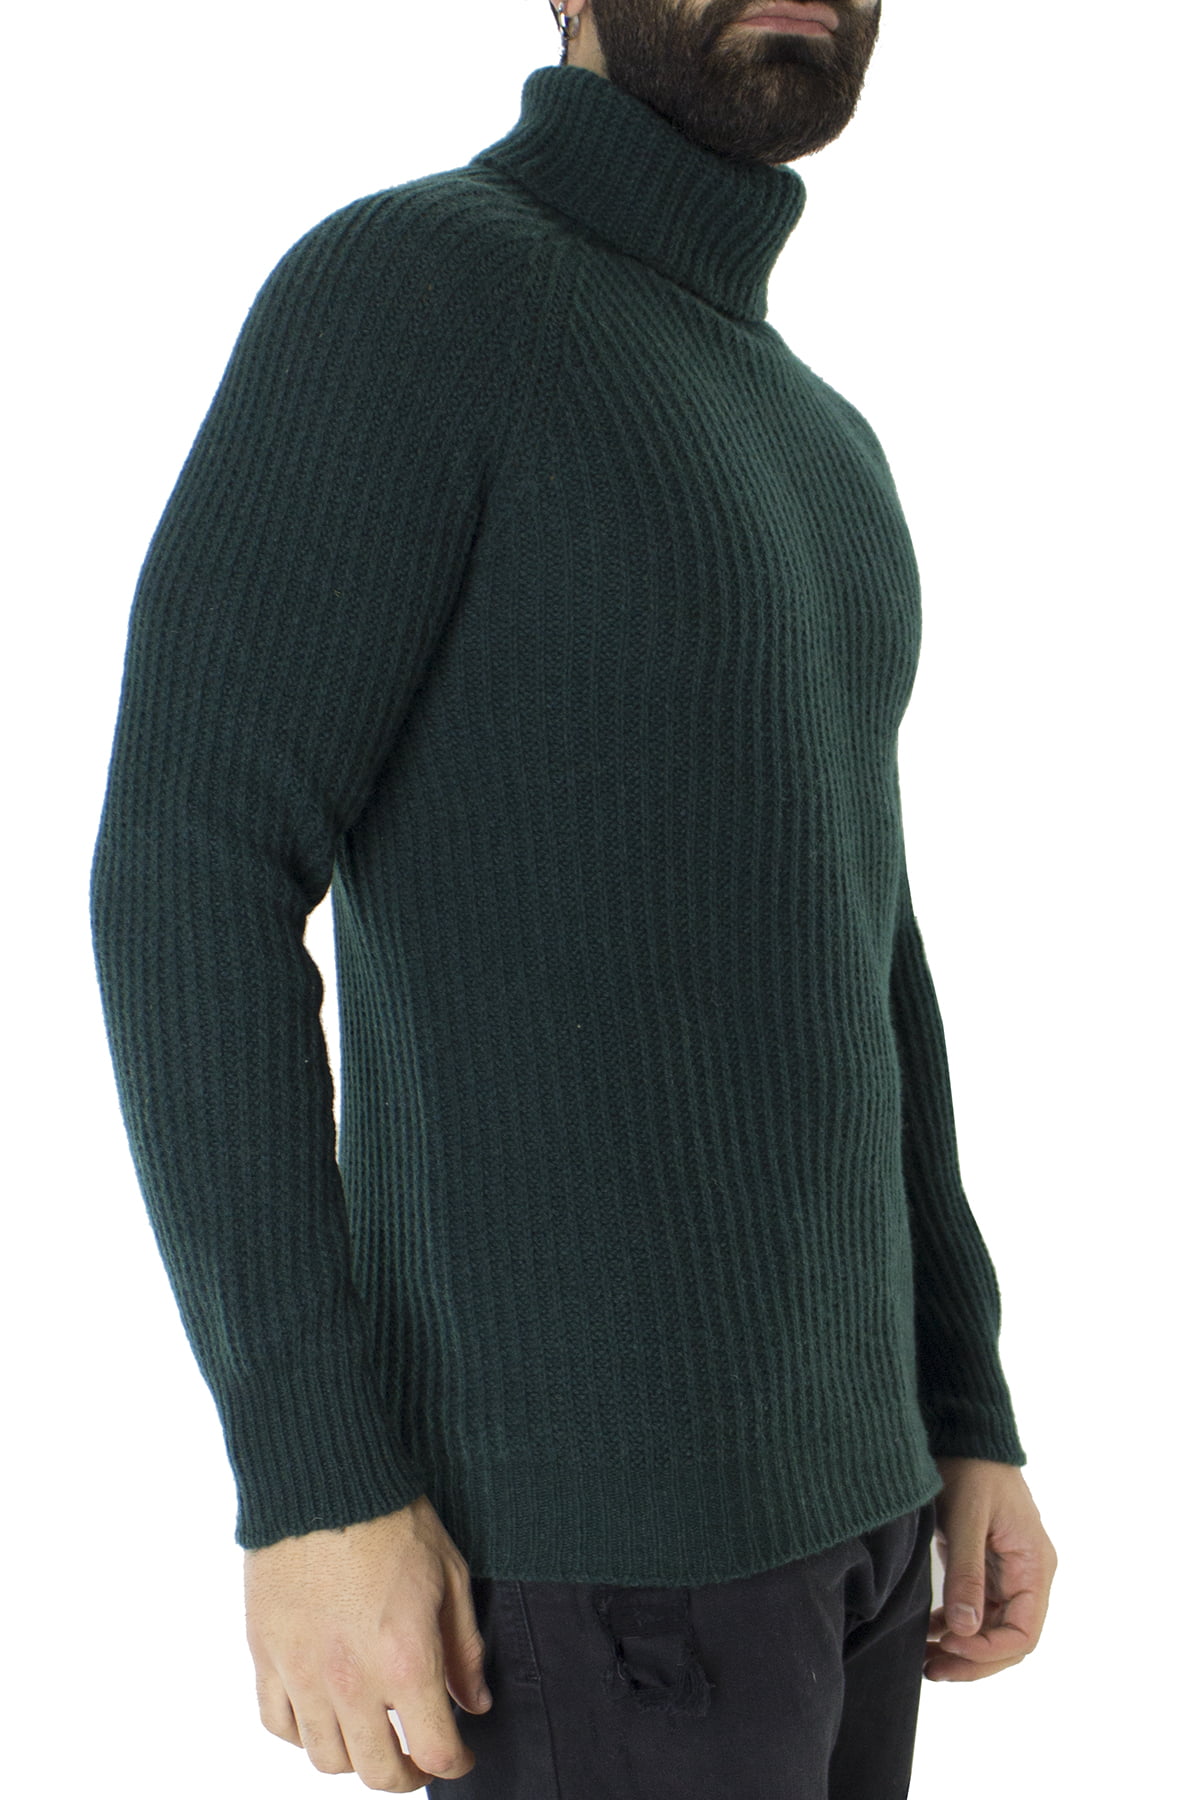 Maglione uomo collo alto verde in lana merinos a costa inglese slim fit made in italy